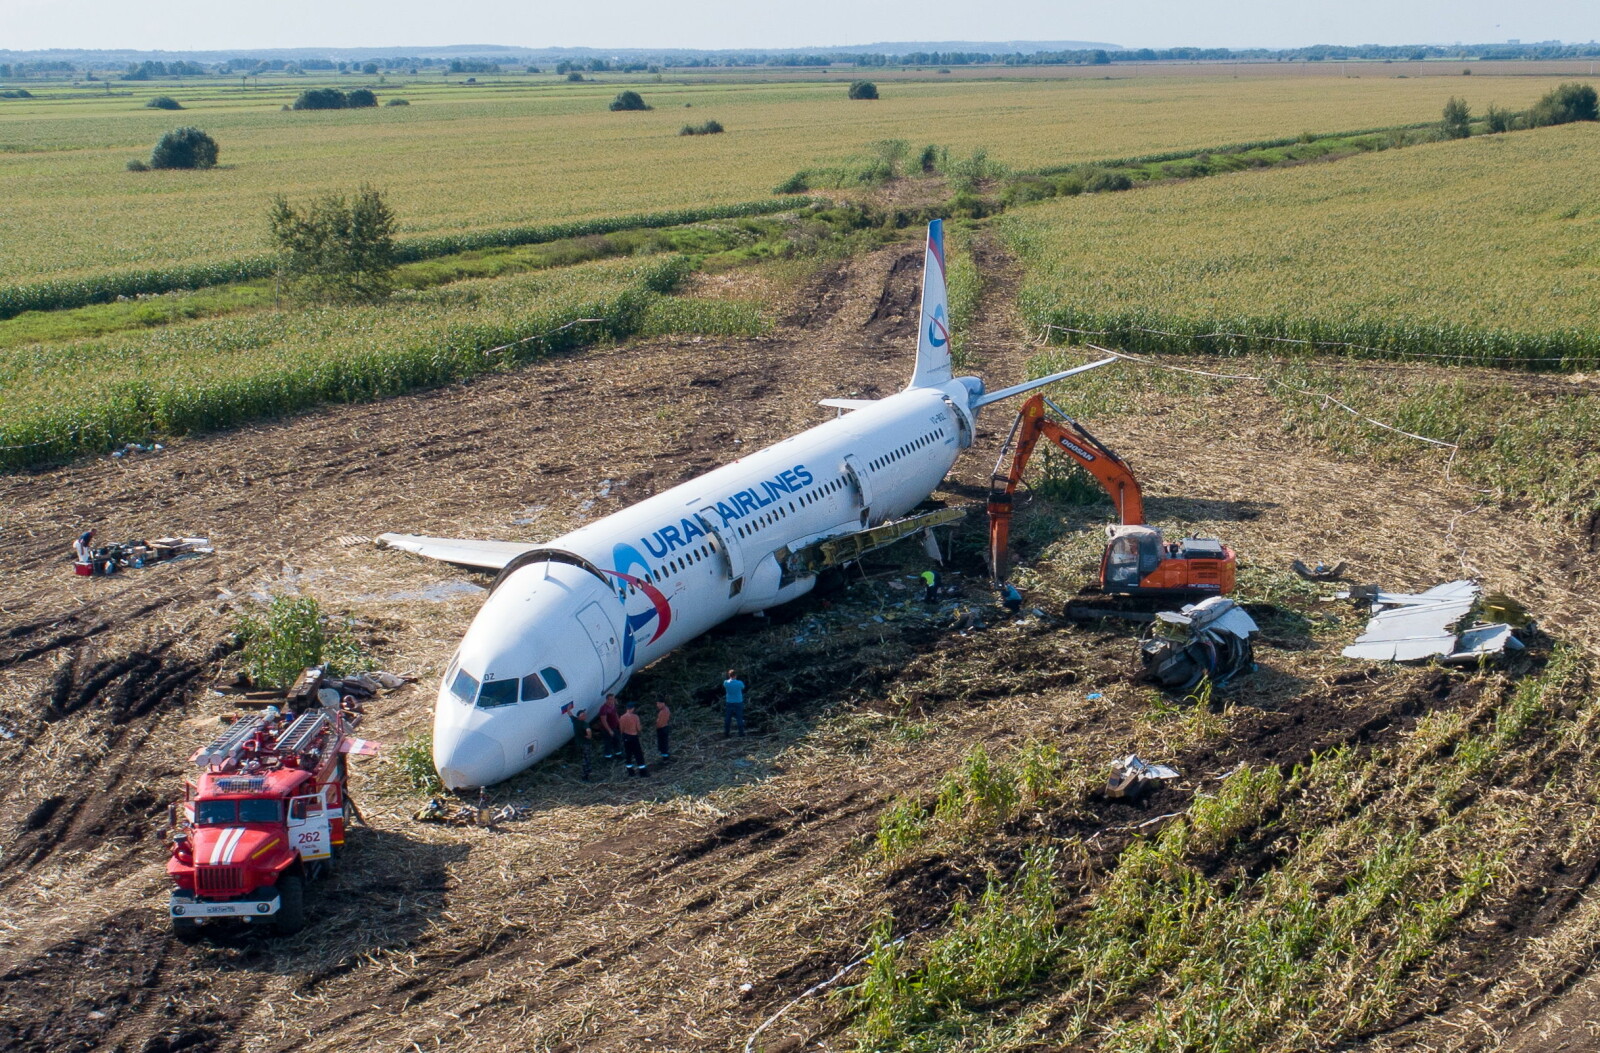 <b>I ÅKEREN:</b> Hvert år blir Russland minnet om den dårlige ulykkesstatistikken med passasjer­fly. Dette var den minst alvorlige i fjor da en Airbus havnet i åkeren etter å ha kollidert med en flokk måker. Ingen omkom. Men flyet ble plukket fra hverandre.